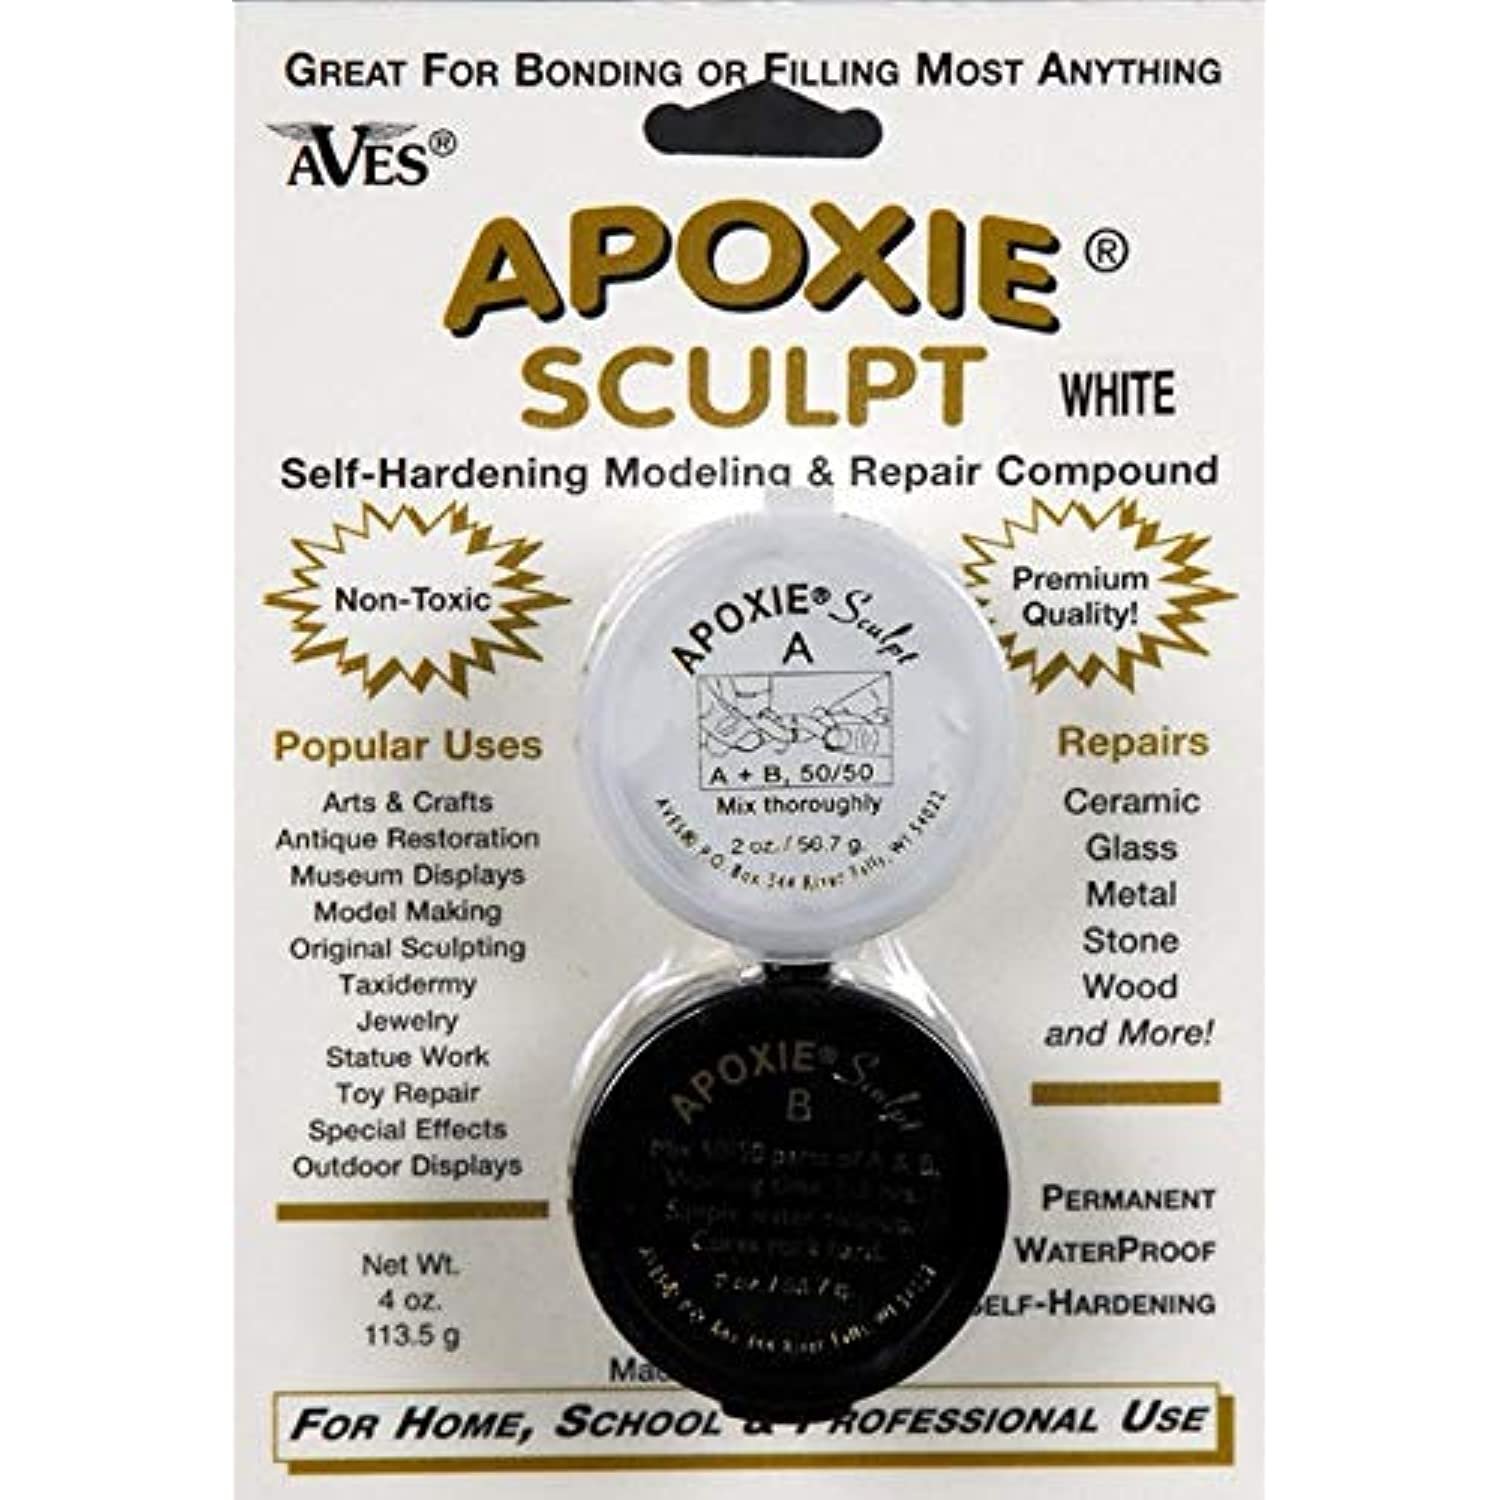 Apoxie Sculpt - 2 Part Modeling Compound (A & B) - 1/4 Pound, White